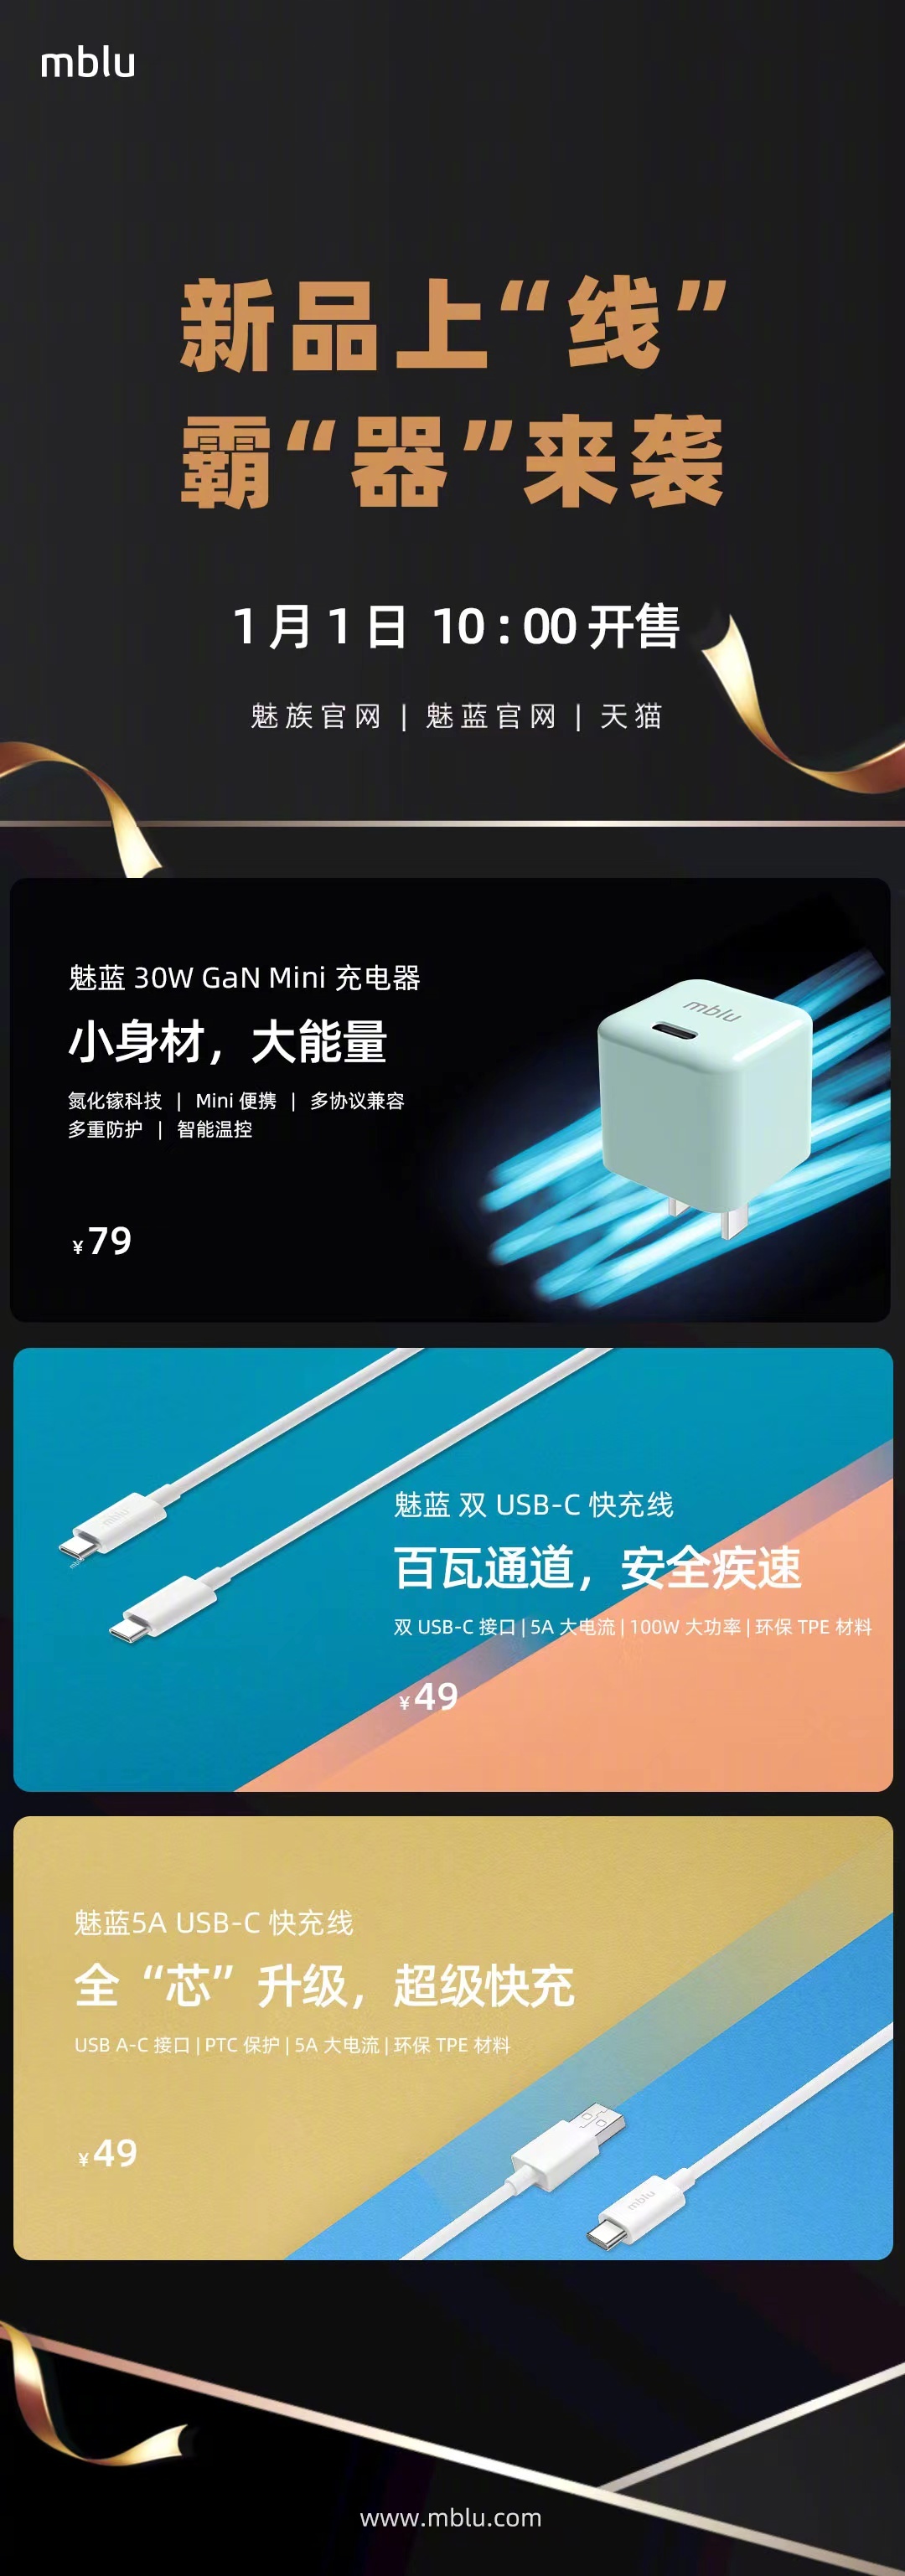 魅蓝推出 30W GaN Mini 充电器、快充线：49 元起，今日开售